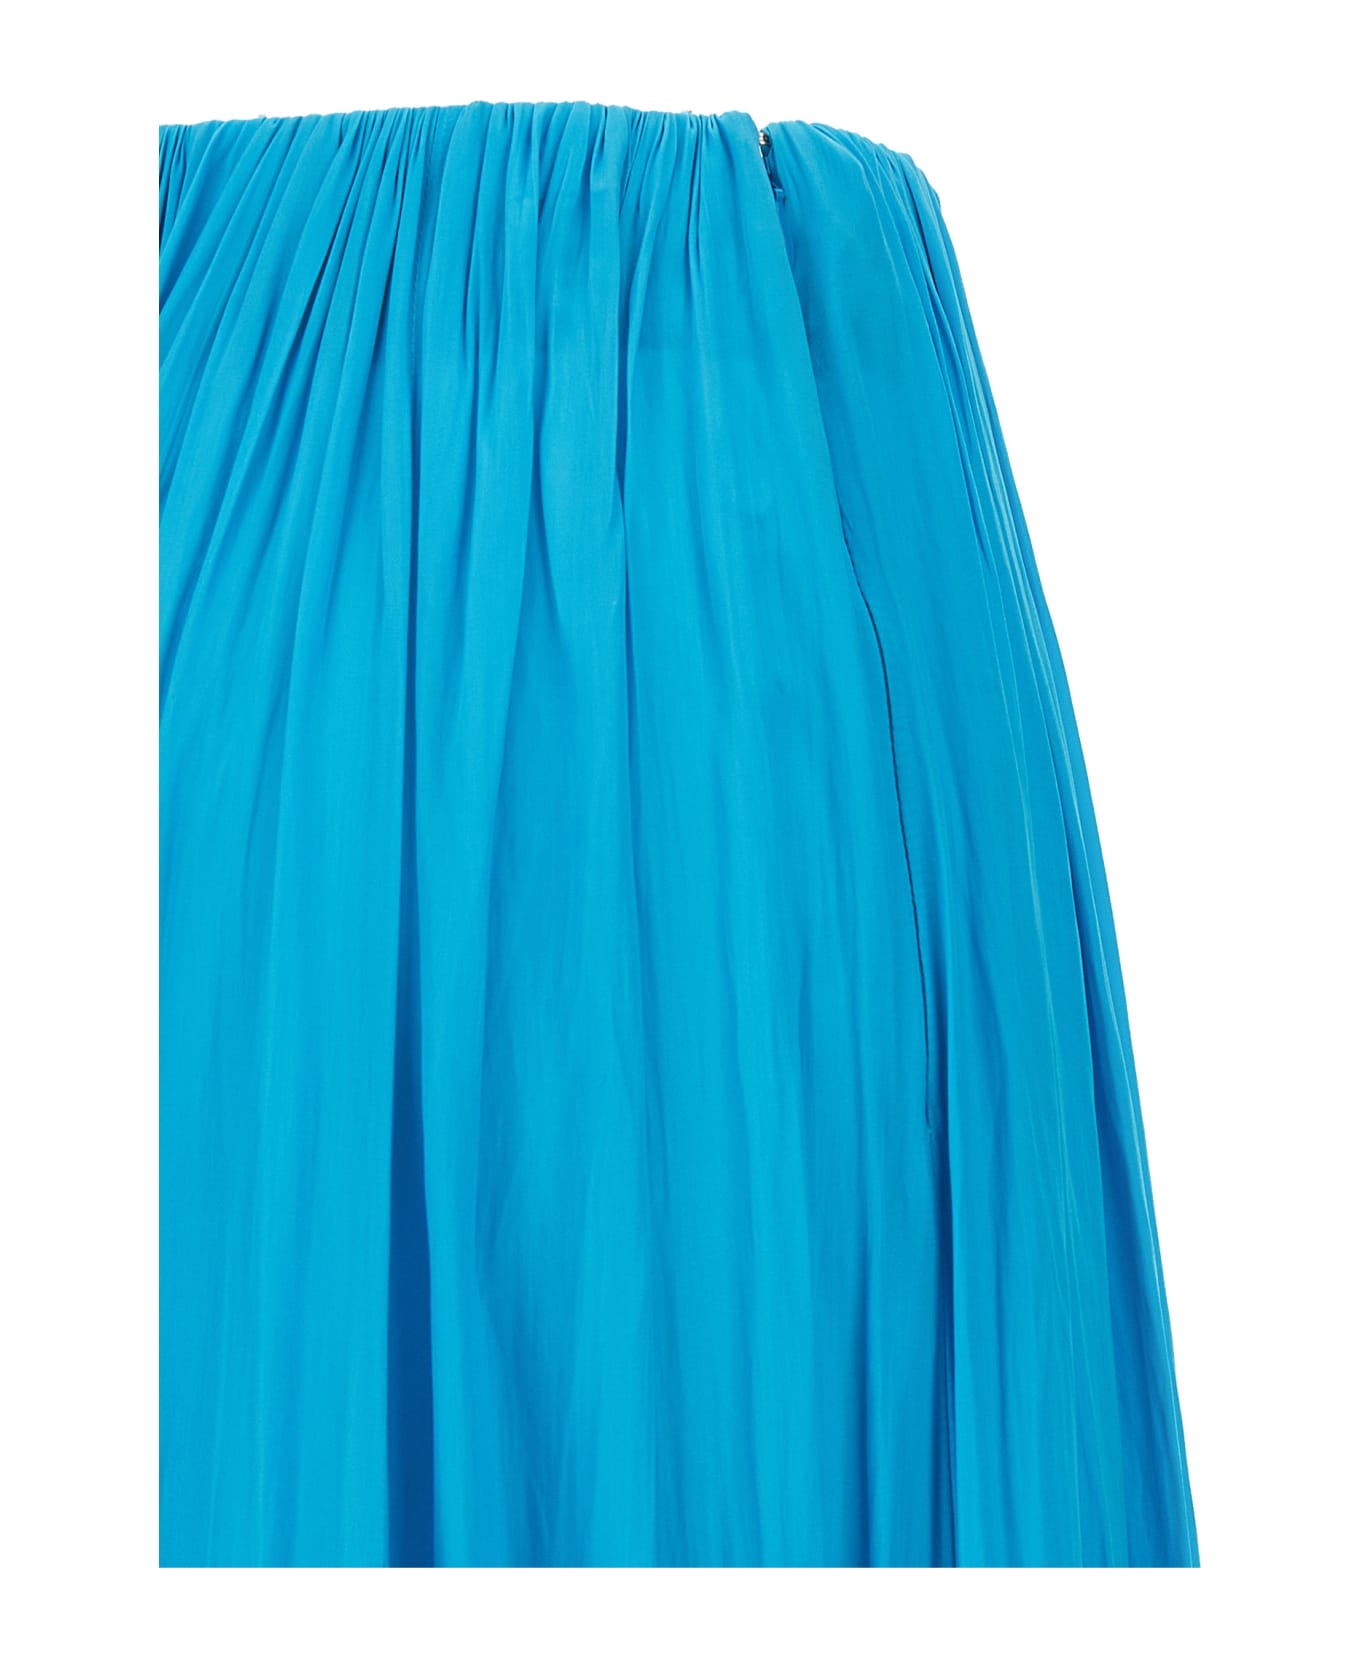 Lanvin Asymmetrical Midi Skirt - Light Blue スカート